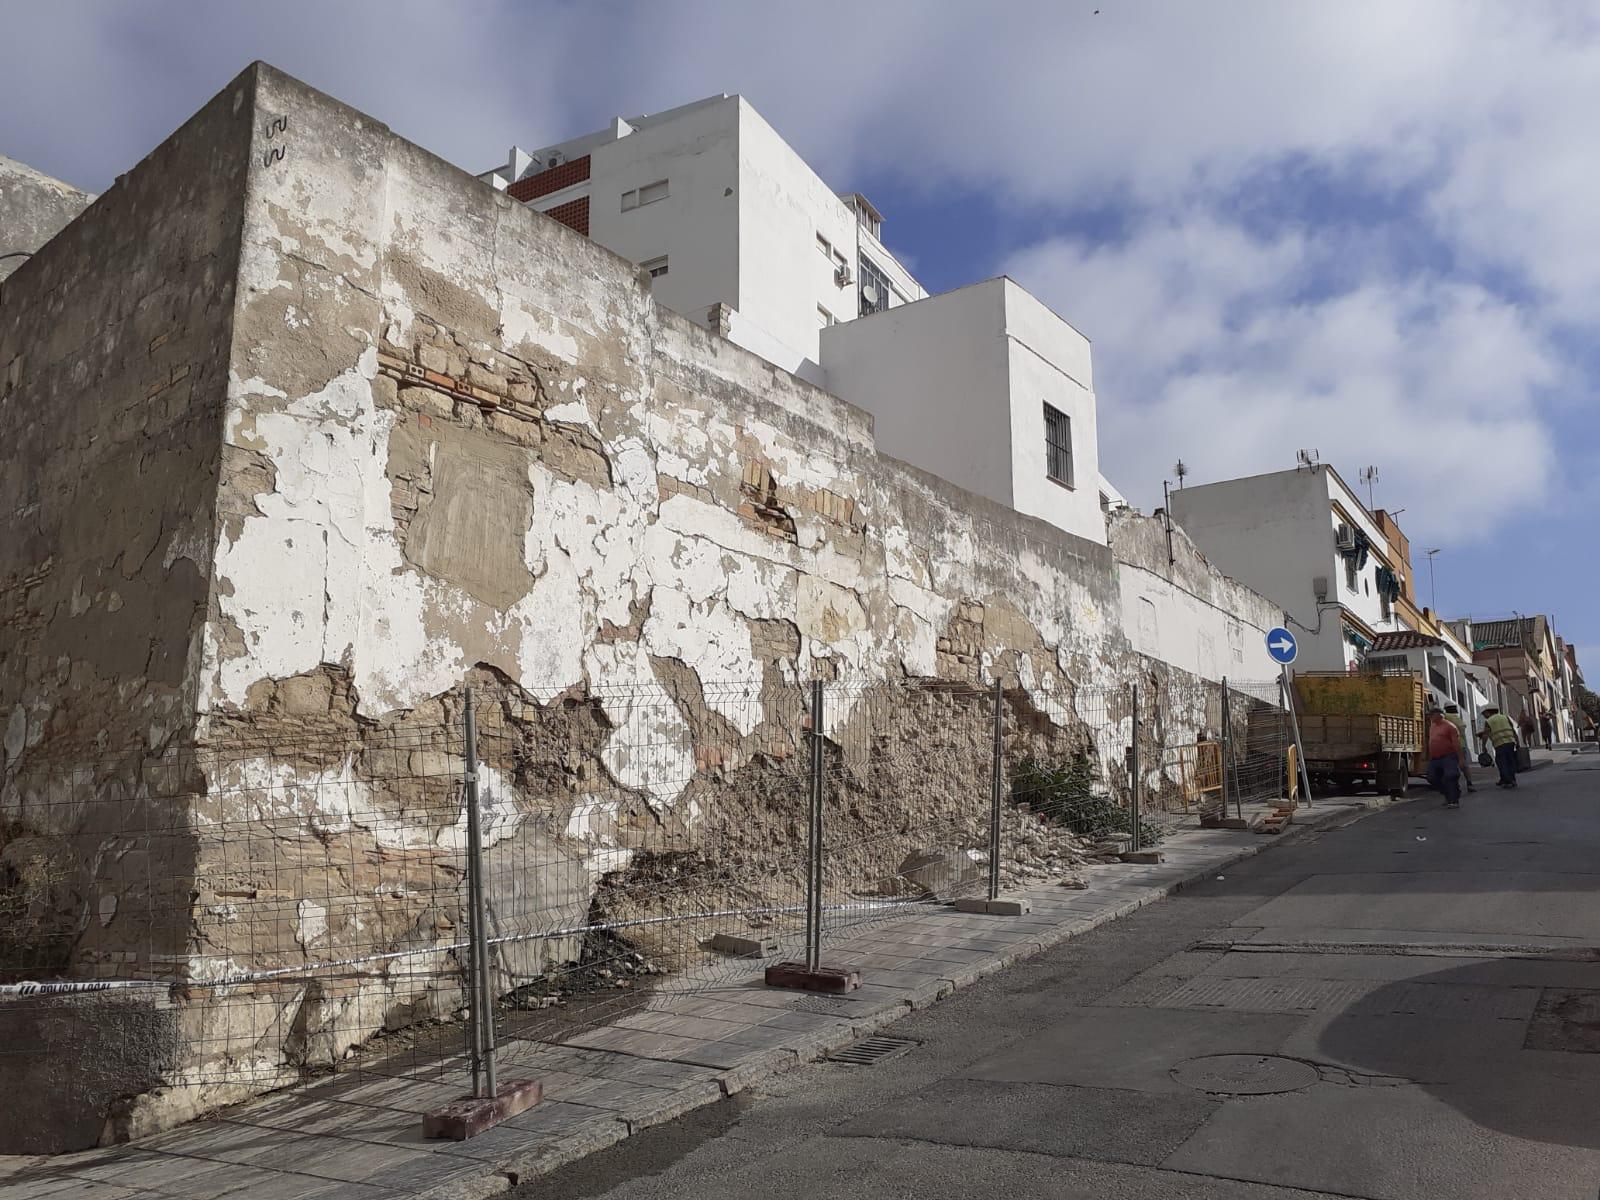 Inicia en Jerez la demolición de la finca de Vista Alegre 22 ordenada por la Administración local